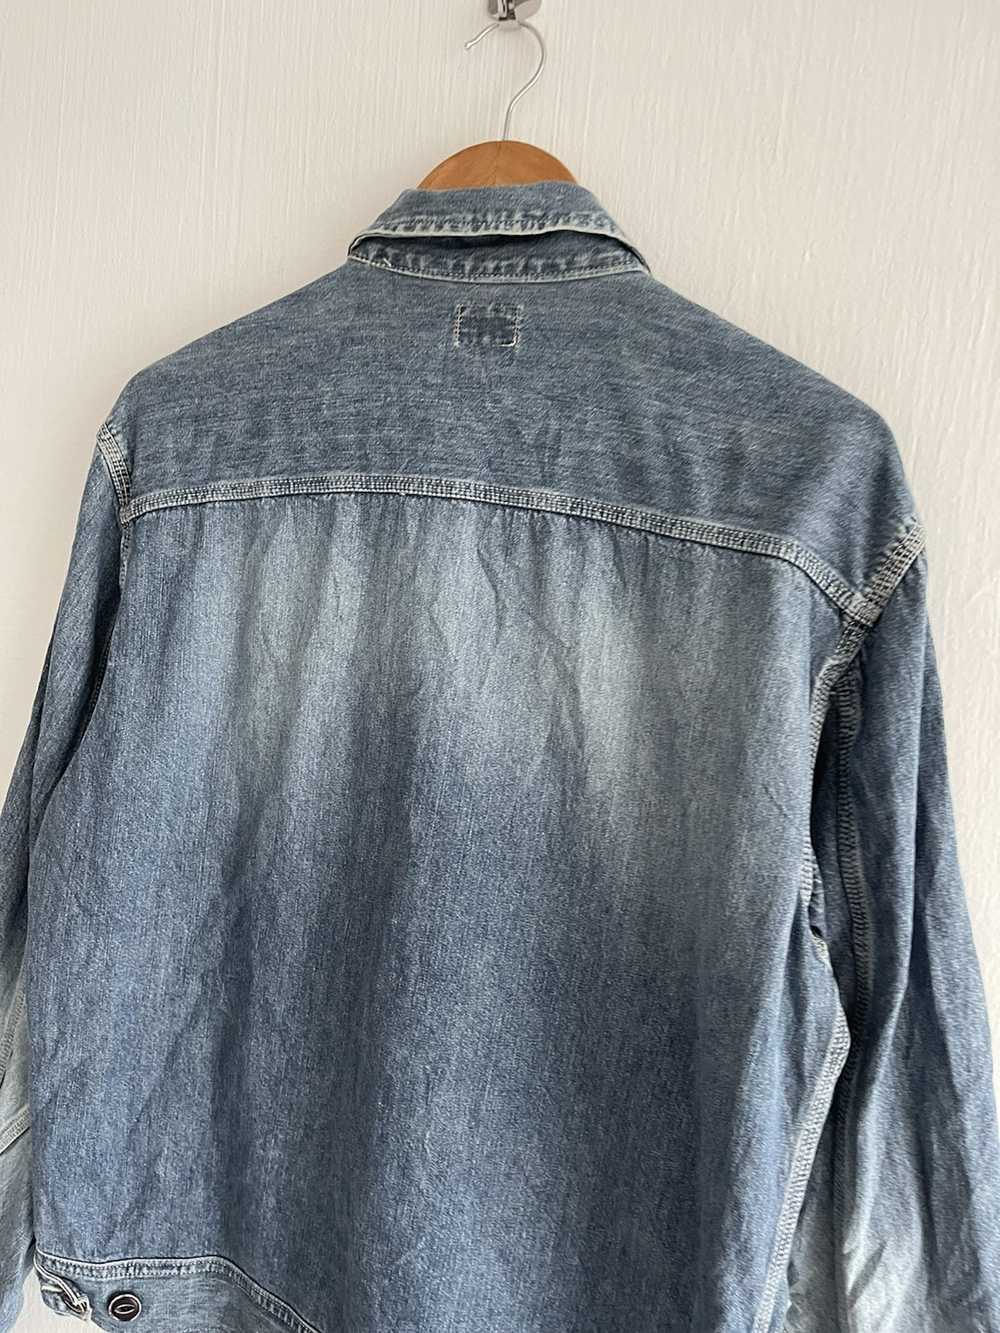 Japanese Brand × Vintage Go West workwear jacket - image 10